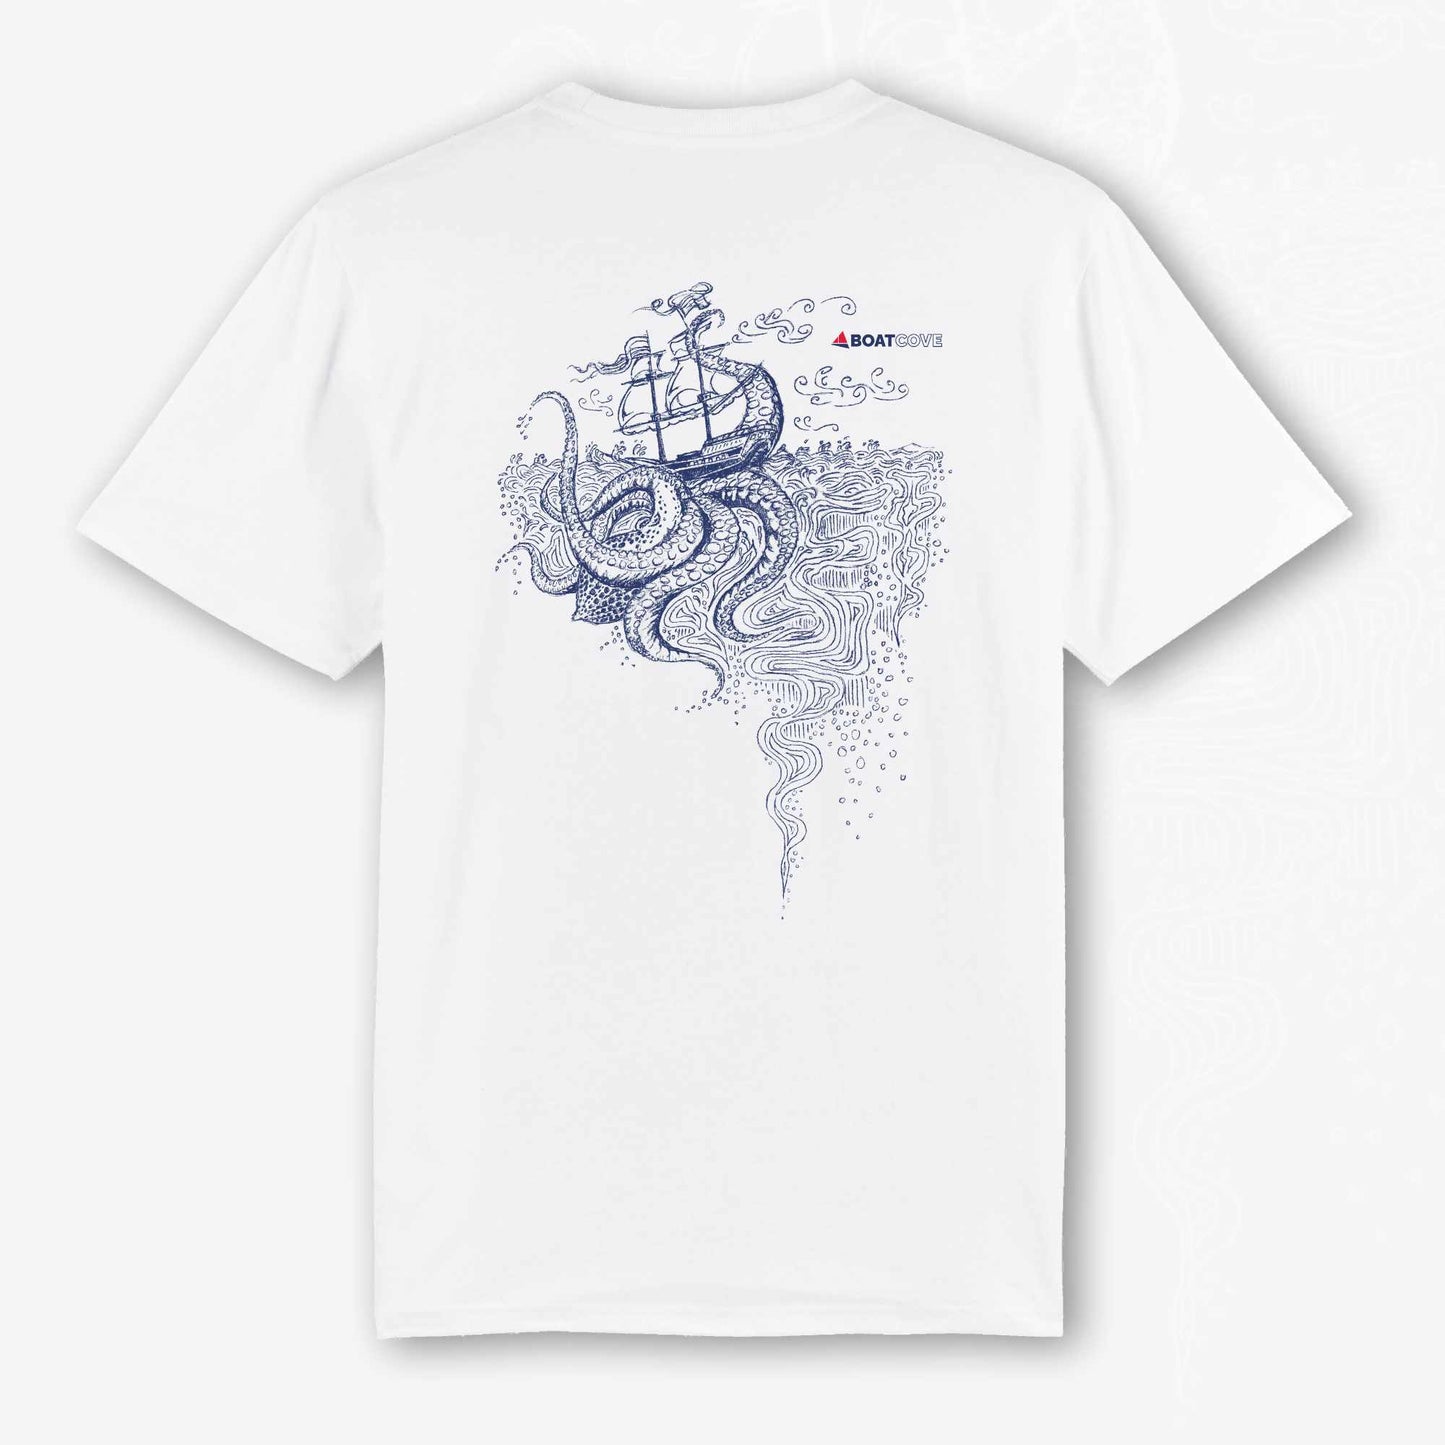 The Kraken Surfaces White Tee - Kraken White T Shirt